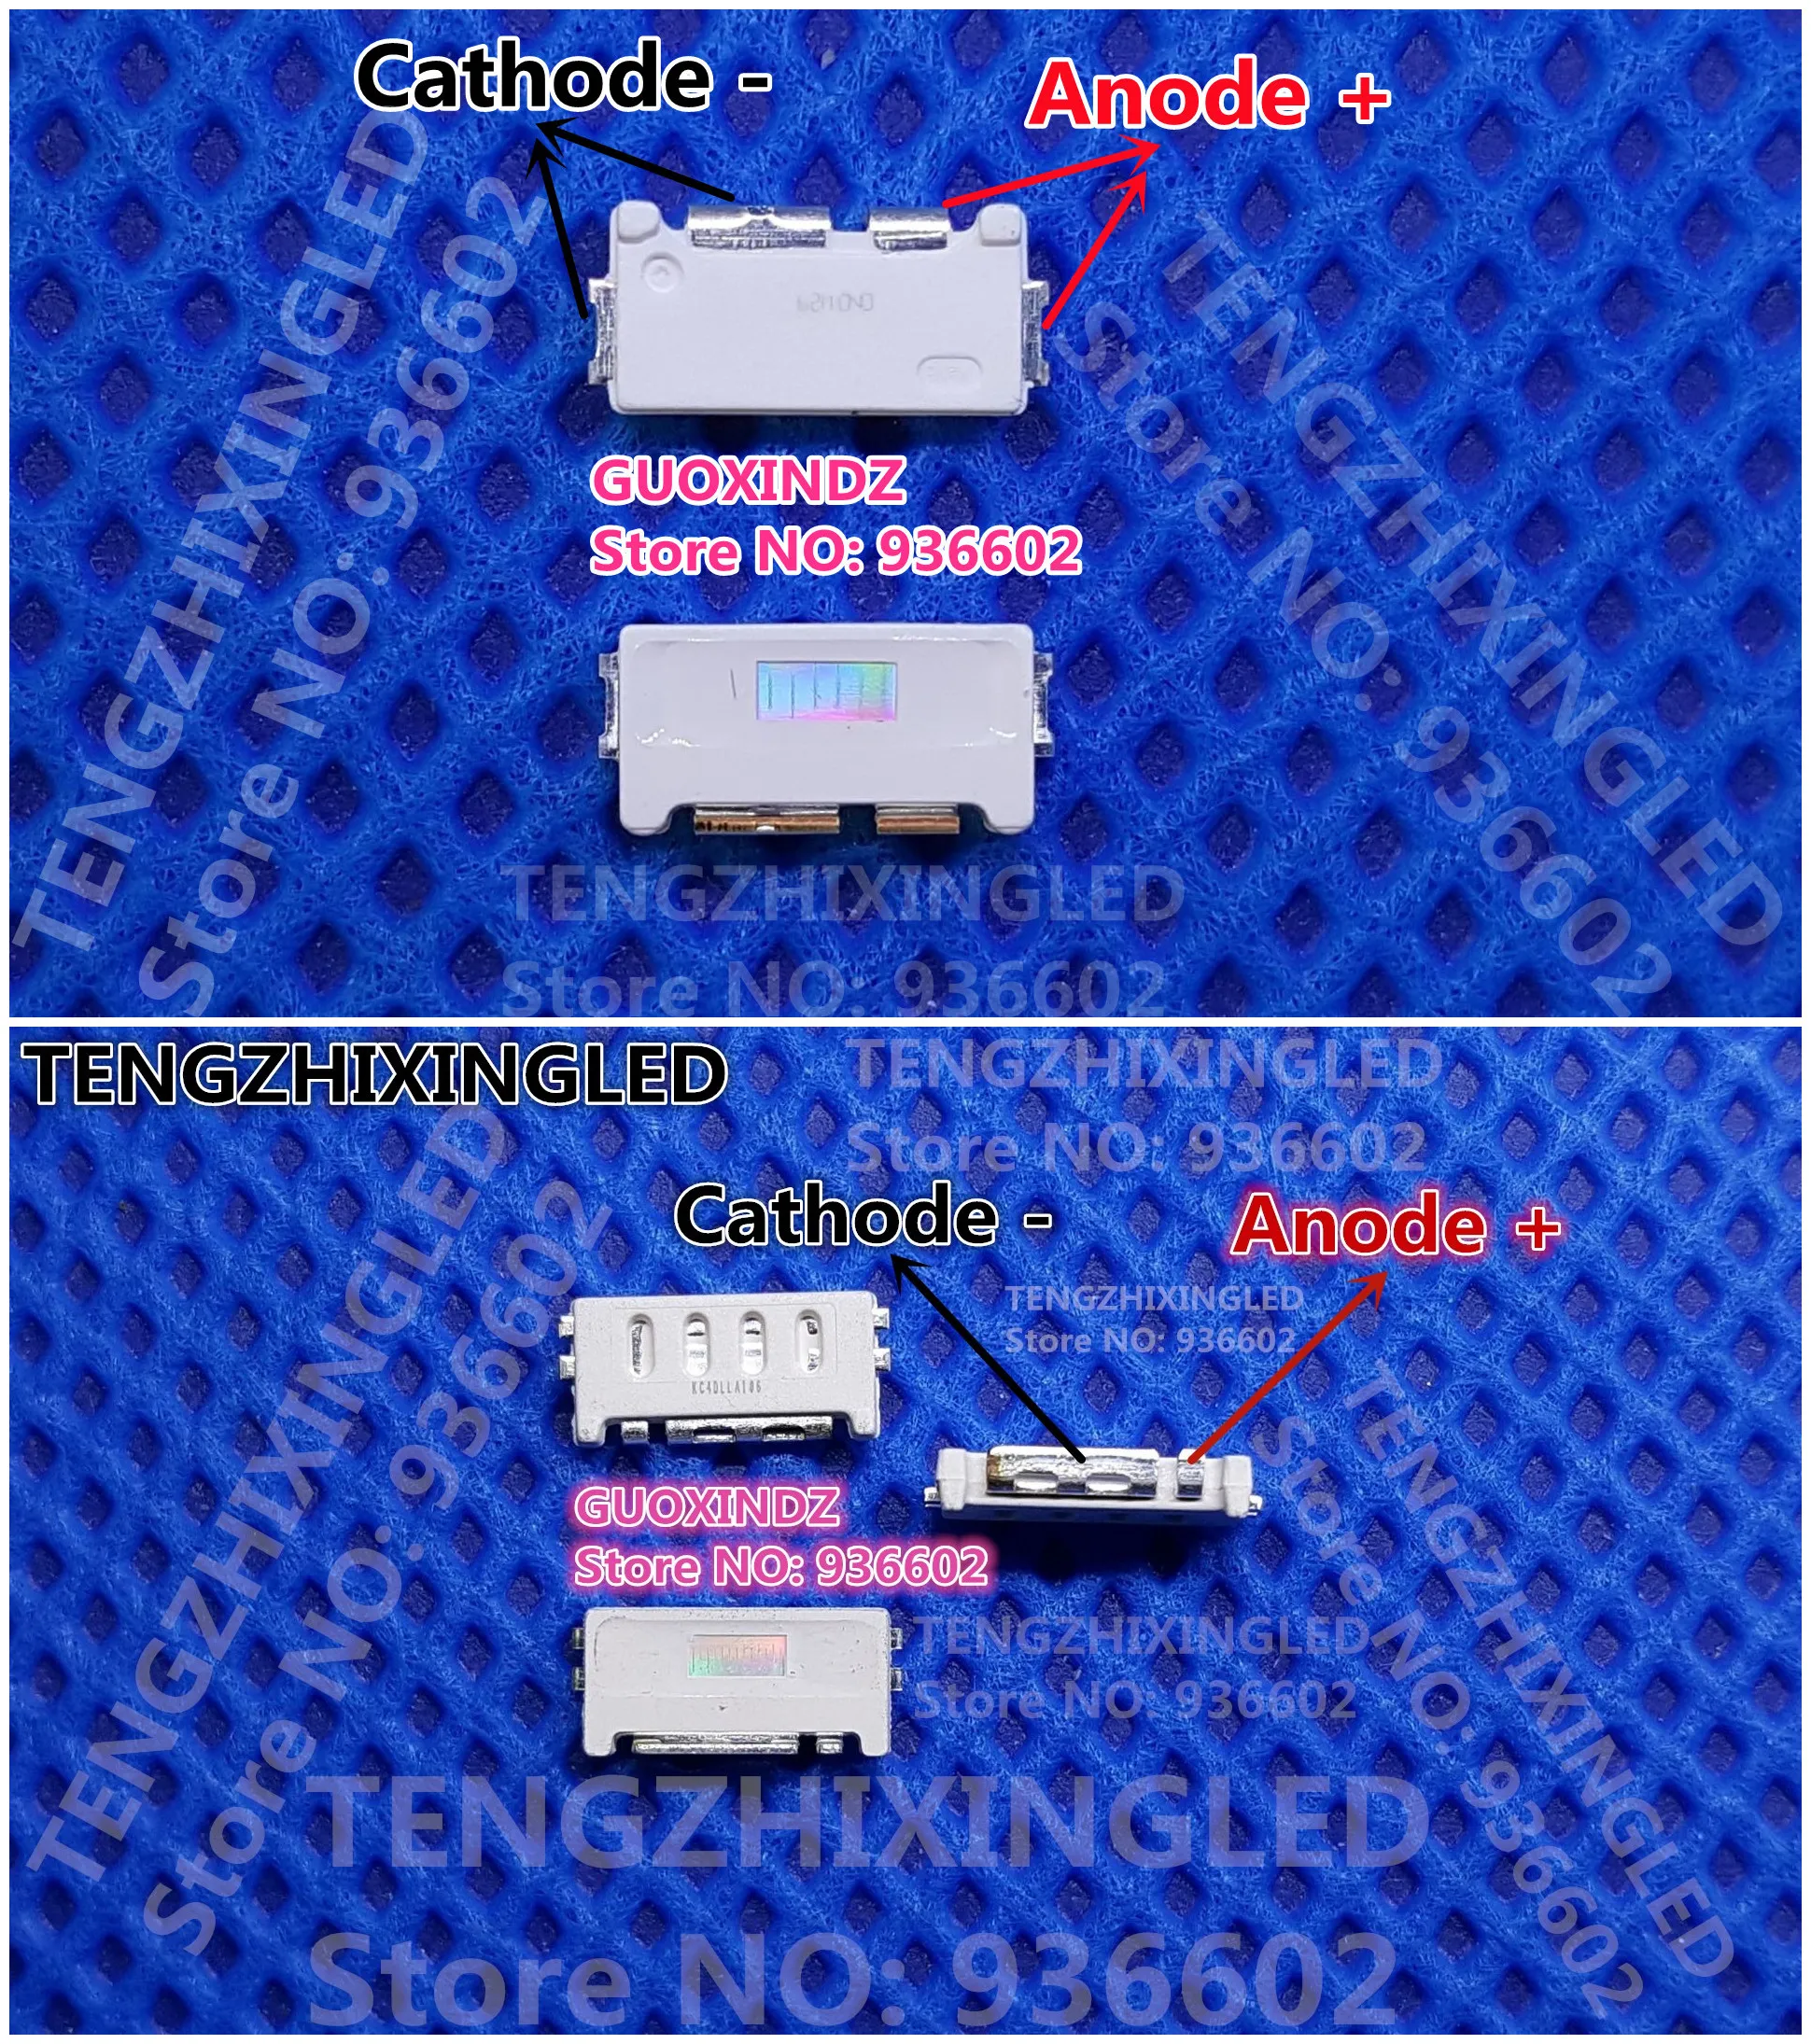 500 шт. для применения в подсветке квантовых точек ТВ SAMSUNG светодиодов серии Edge 1W 3V 7032 BLUE PKG.